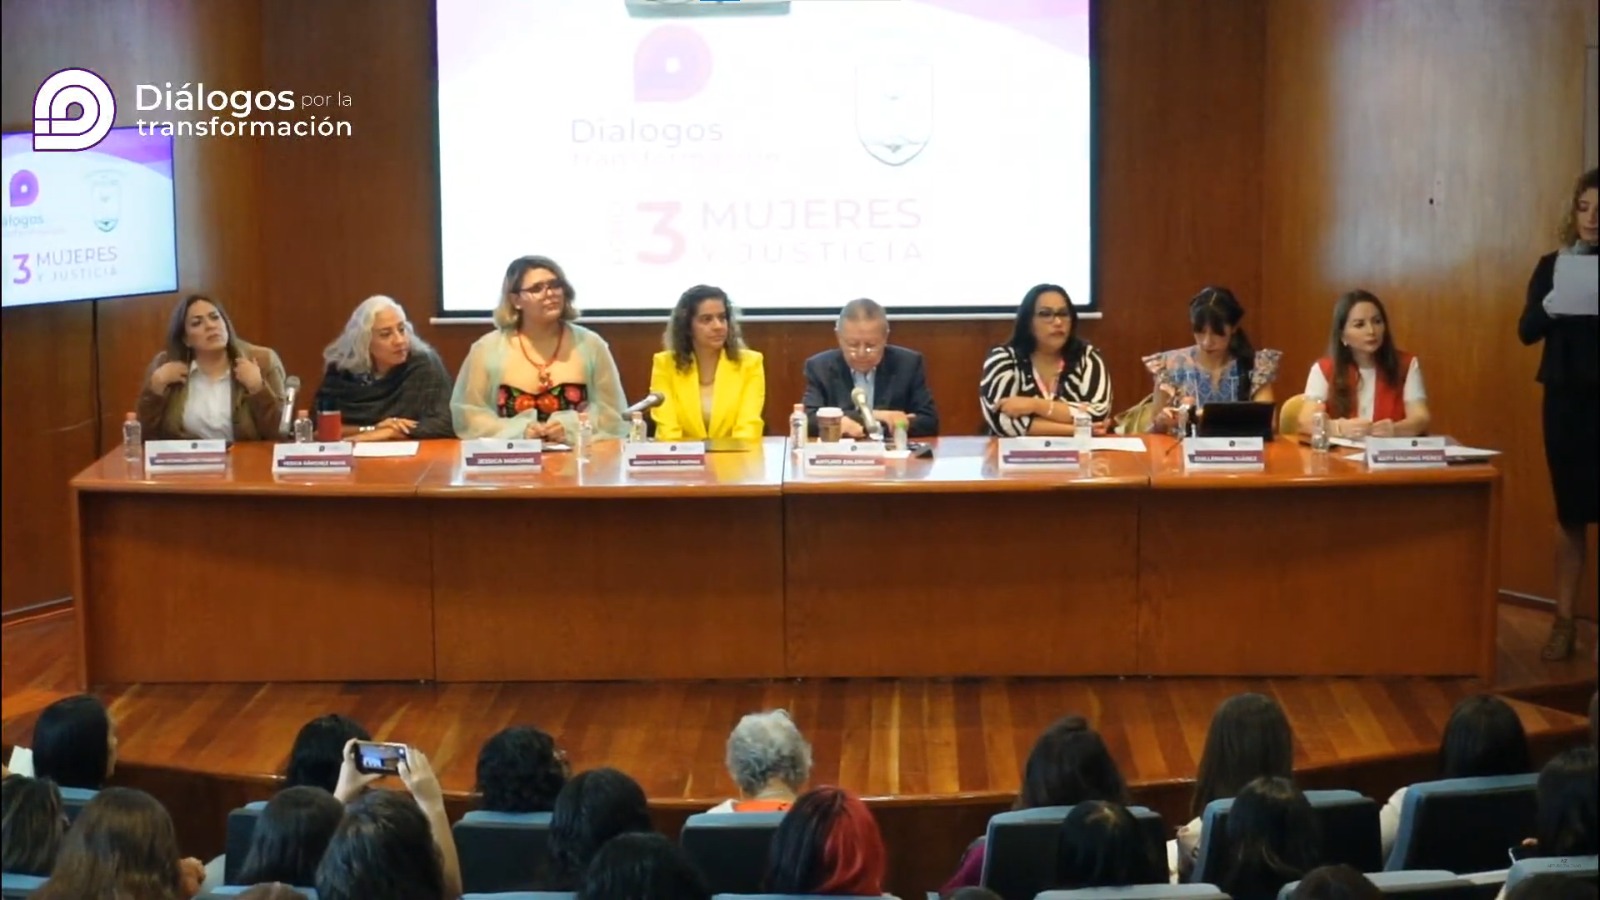 Presenta Arturo Zaldívar “Diálogos por la transformación” en favor de los derechos de las mujeres